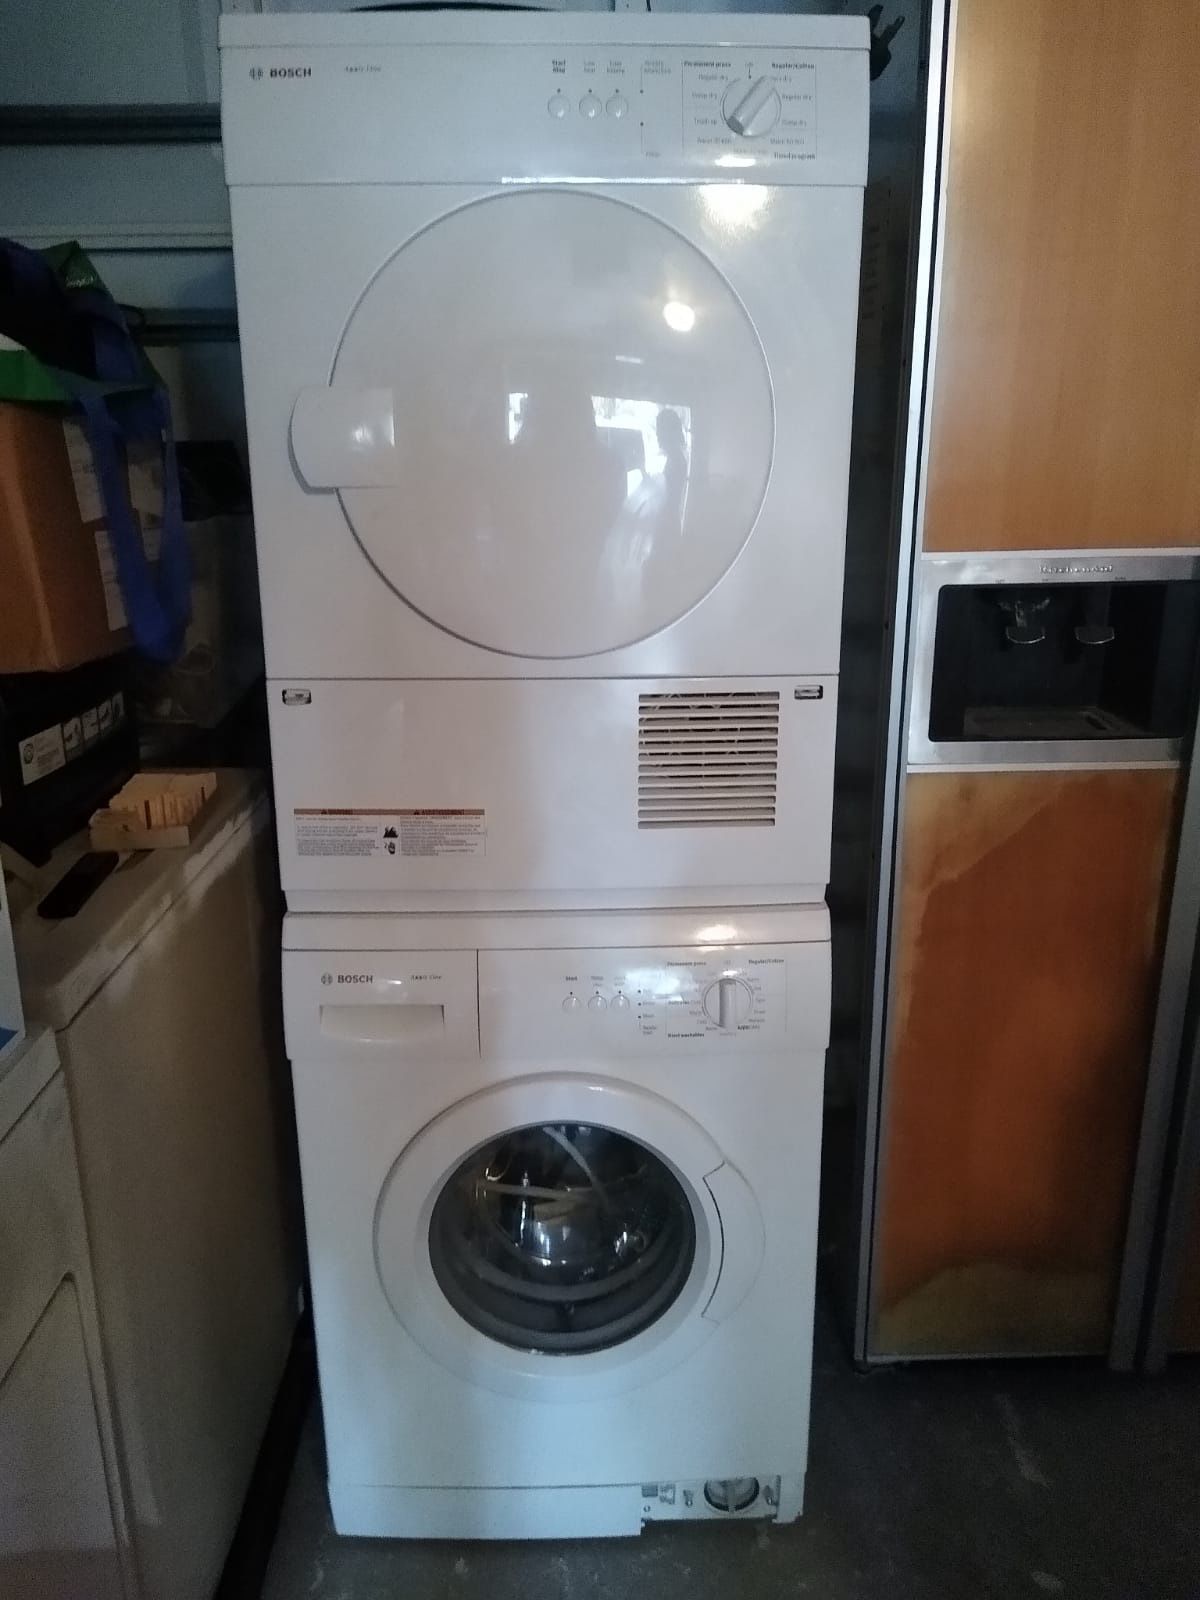 Washer and dryer machine